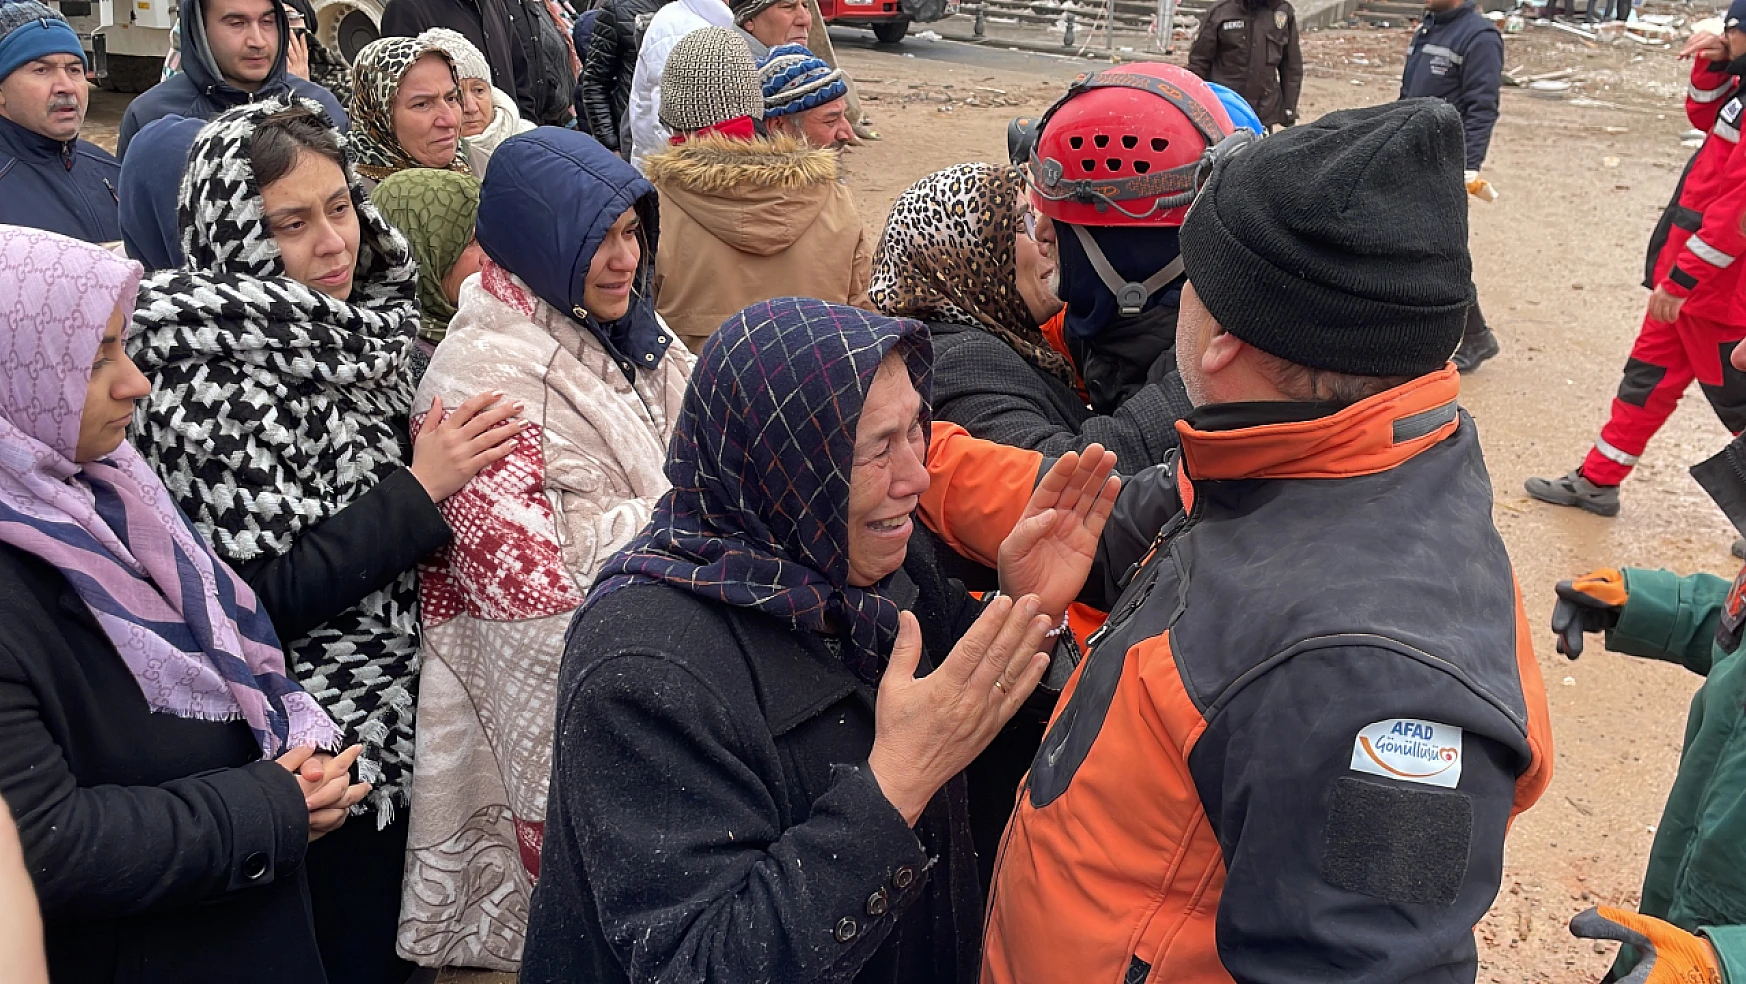 Gaziantep'te yıkılan binanın enkazından 30 saat sonra aynı aileden 2 kişi kurtarıldı